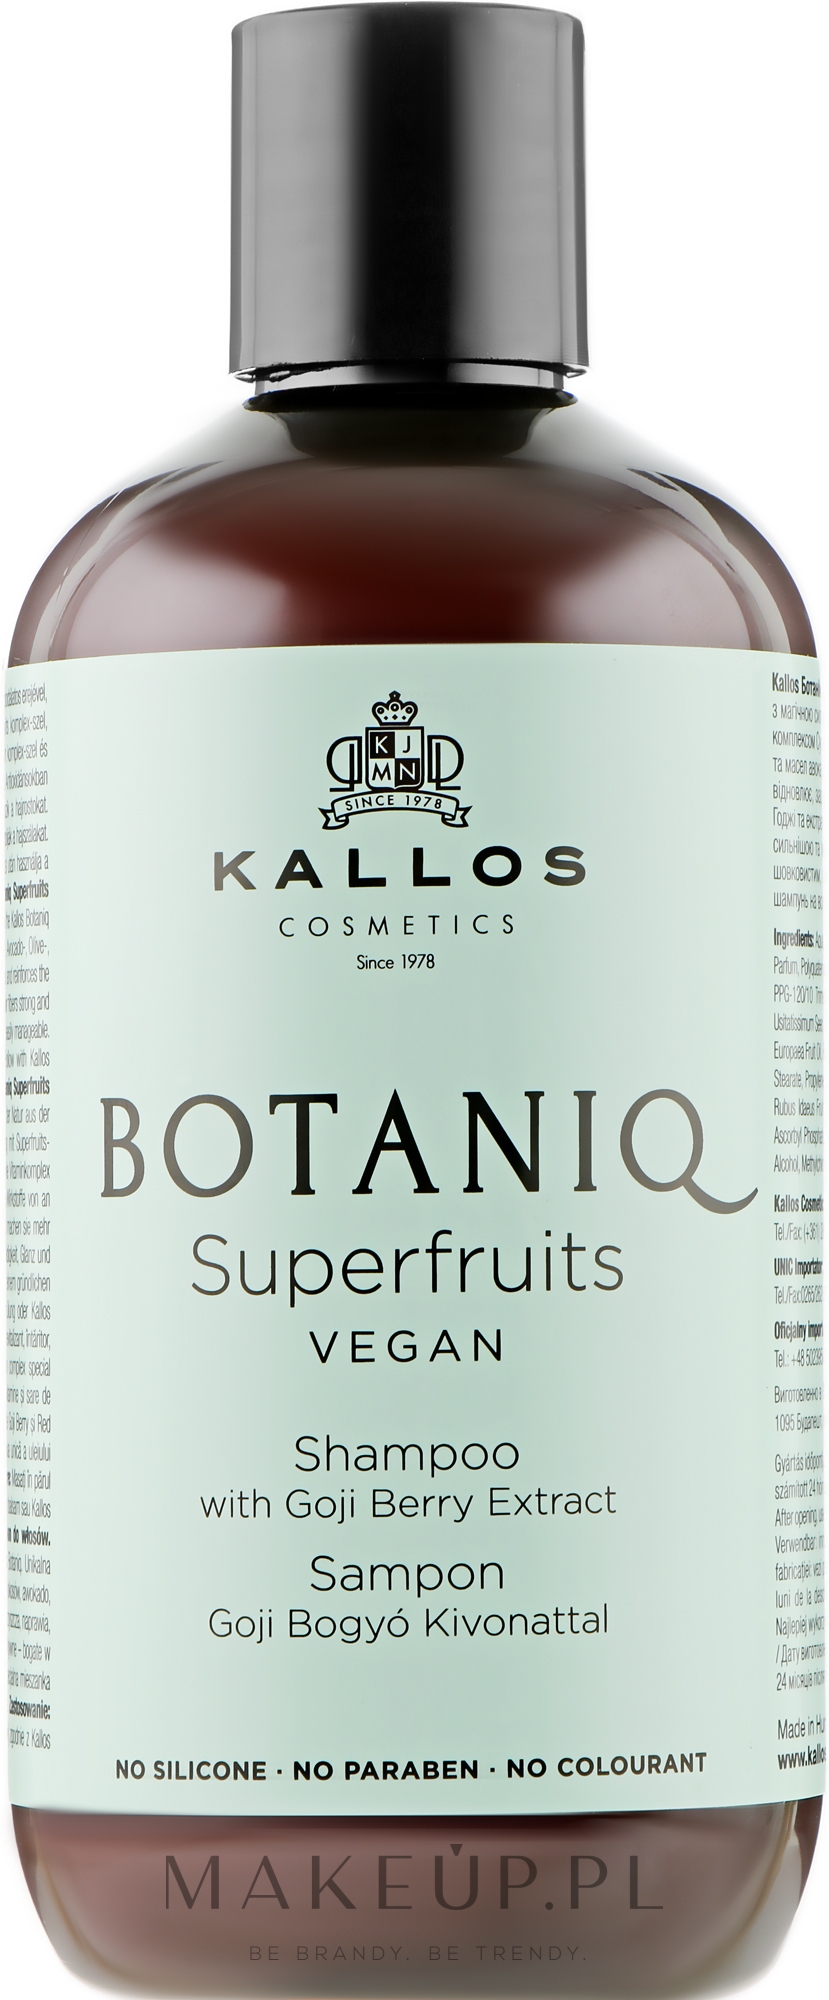 kallos botaniq superfruits szampon opinie